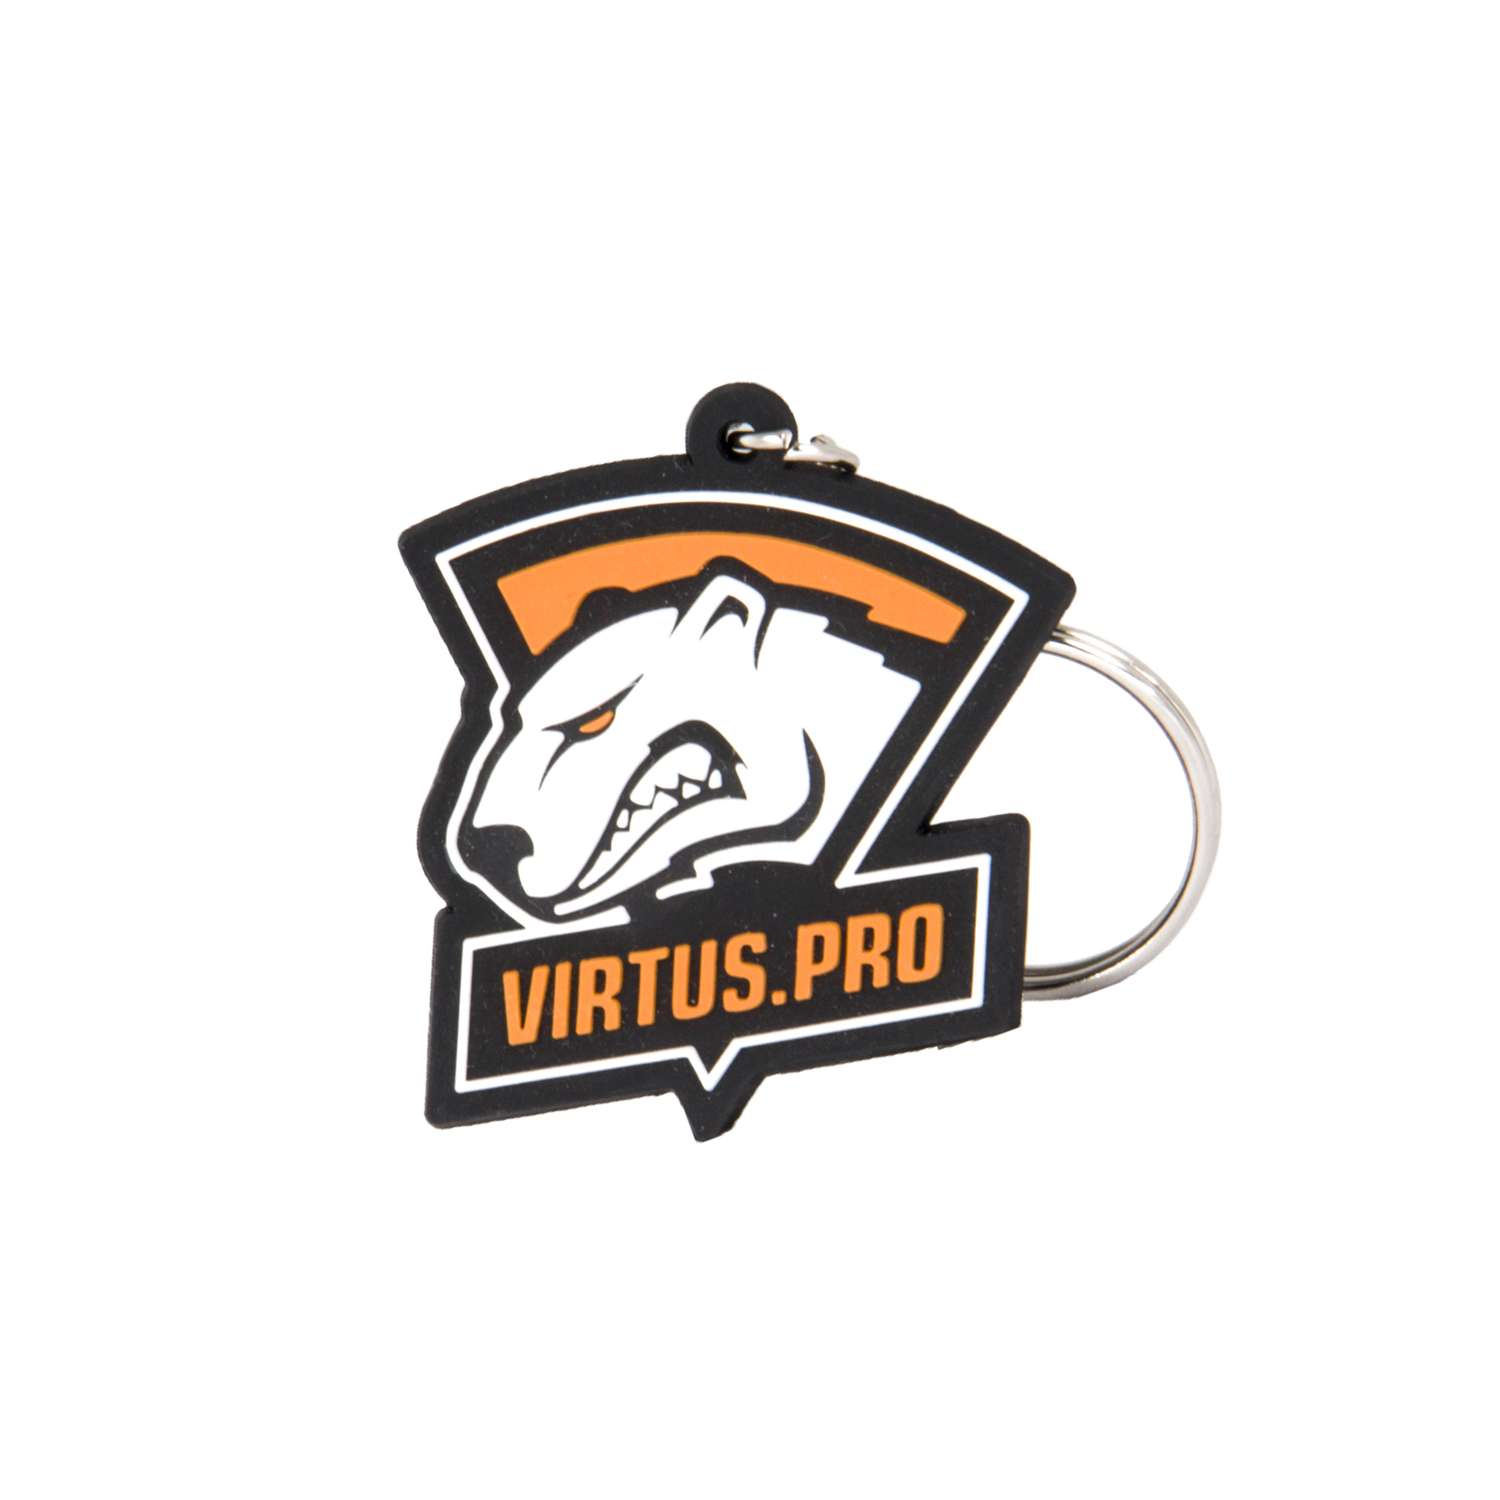 Брелок Virtus.pro для ключей - фото 5